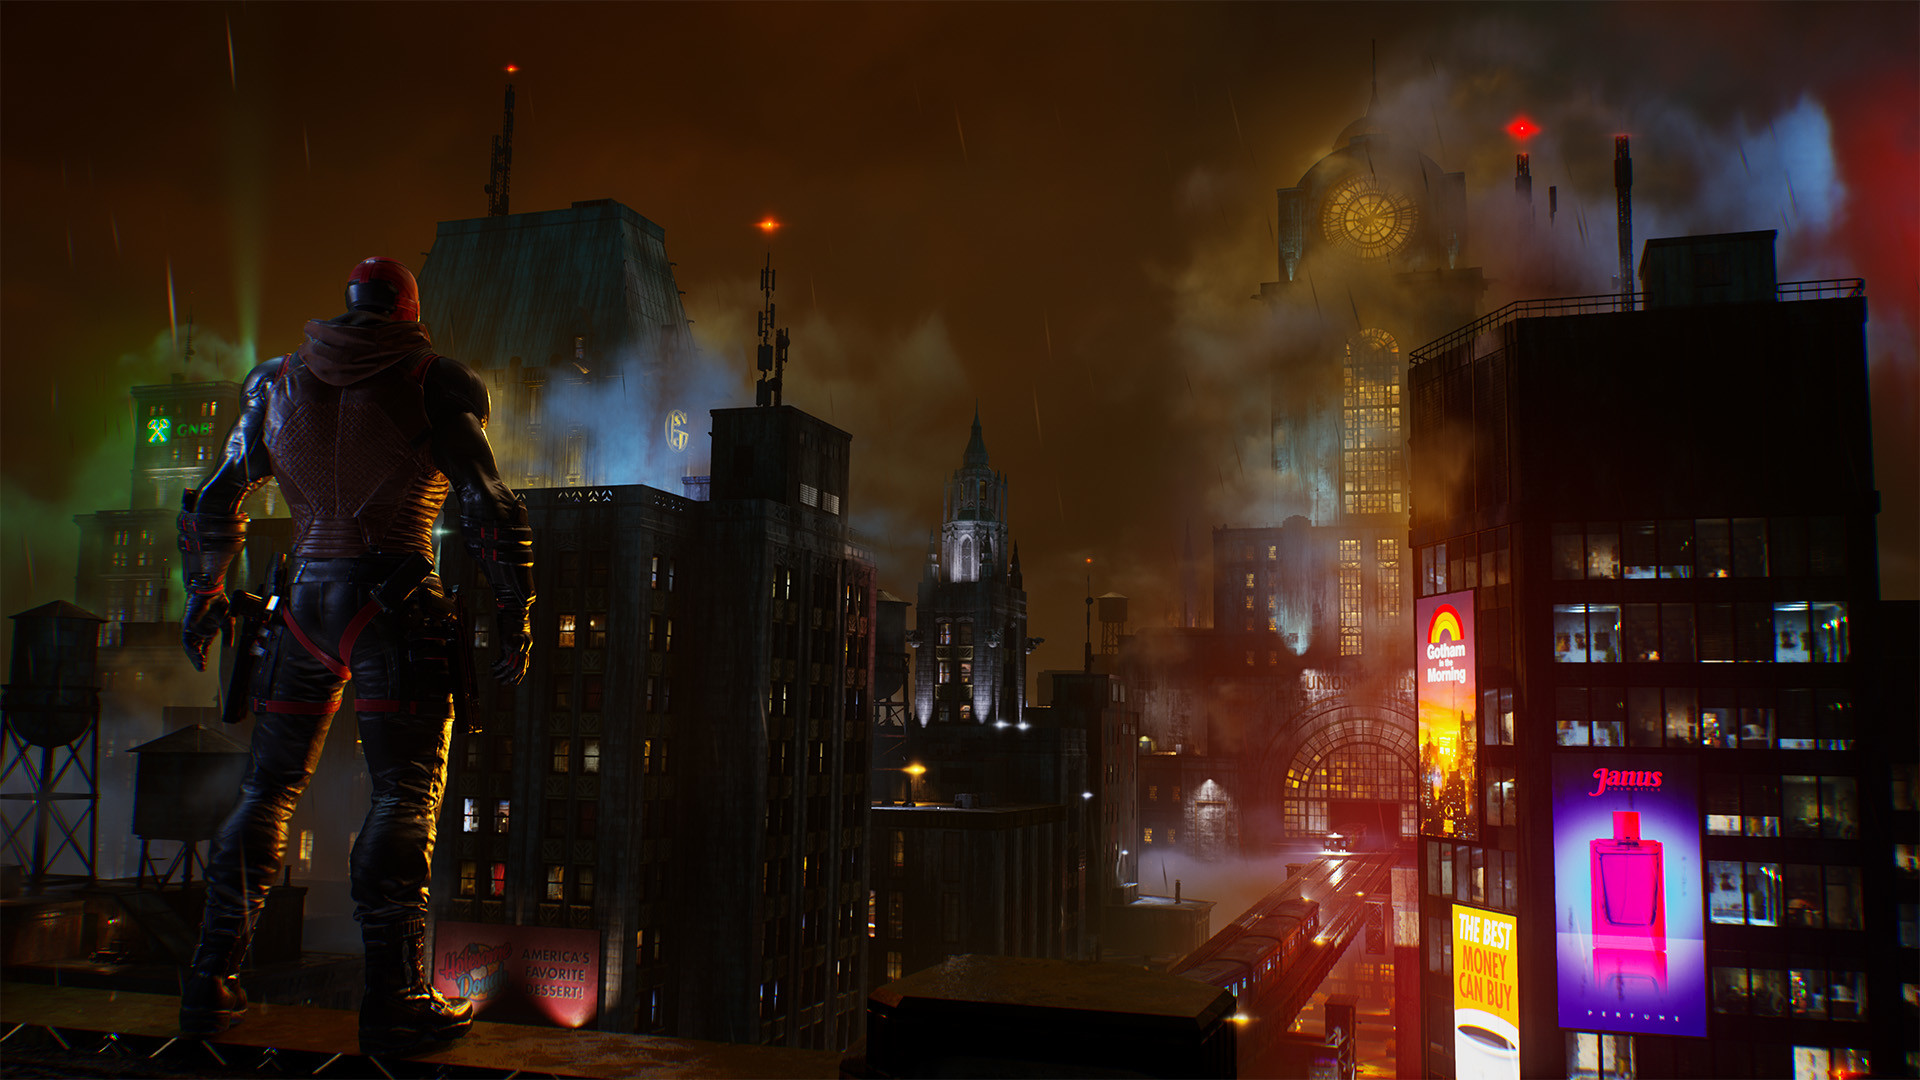 Gotham Knights: Veja os requisitos mínimos e recomendados para jogar no PC